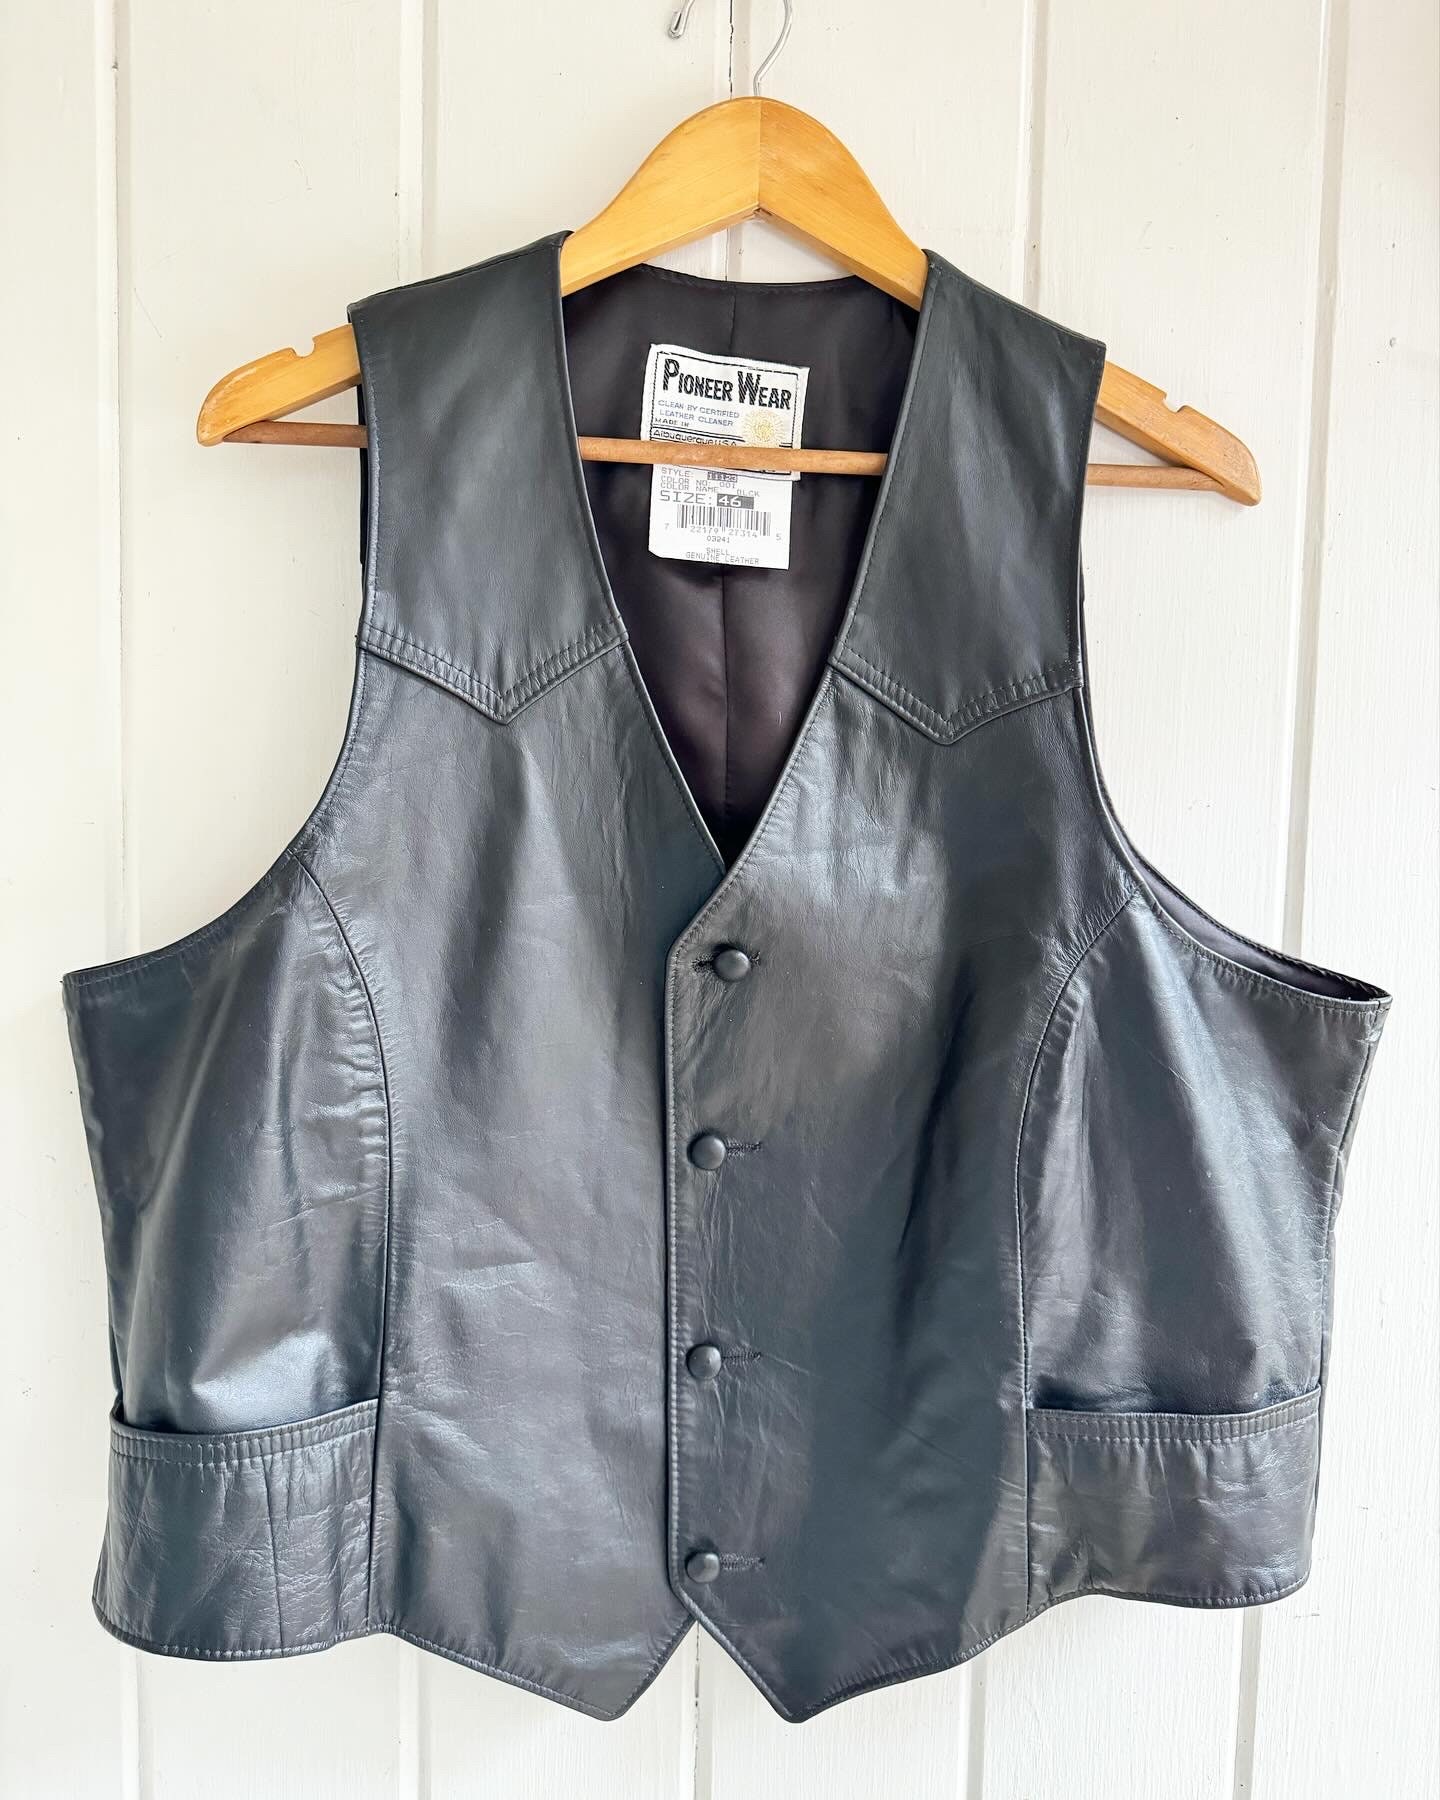 Mens Vintage Black Leather Pioneer Wear Vest. Size 46 Leather Vest 